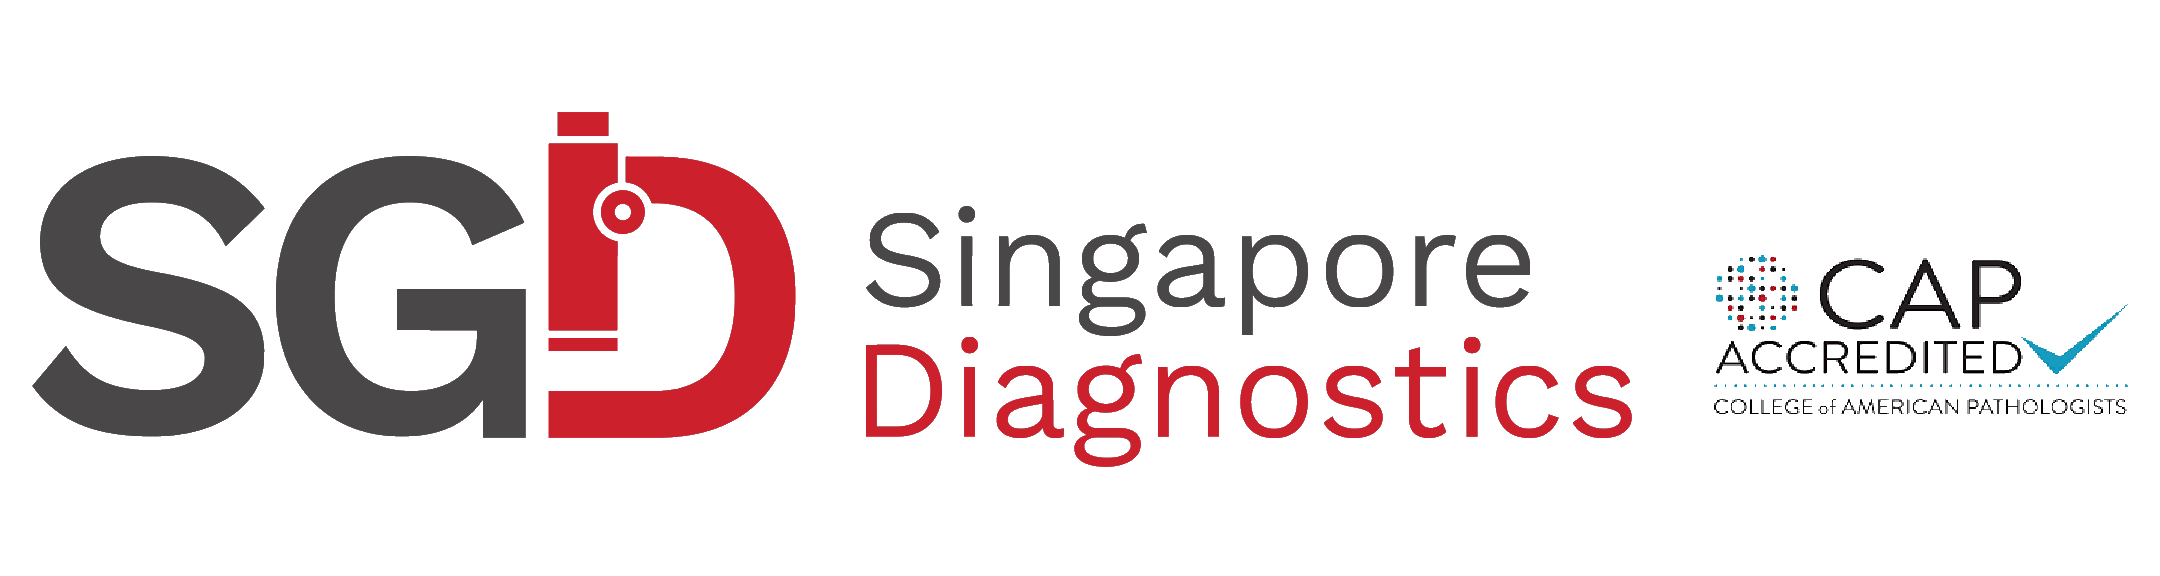 Singapore Diagnostics